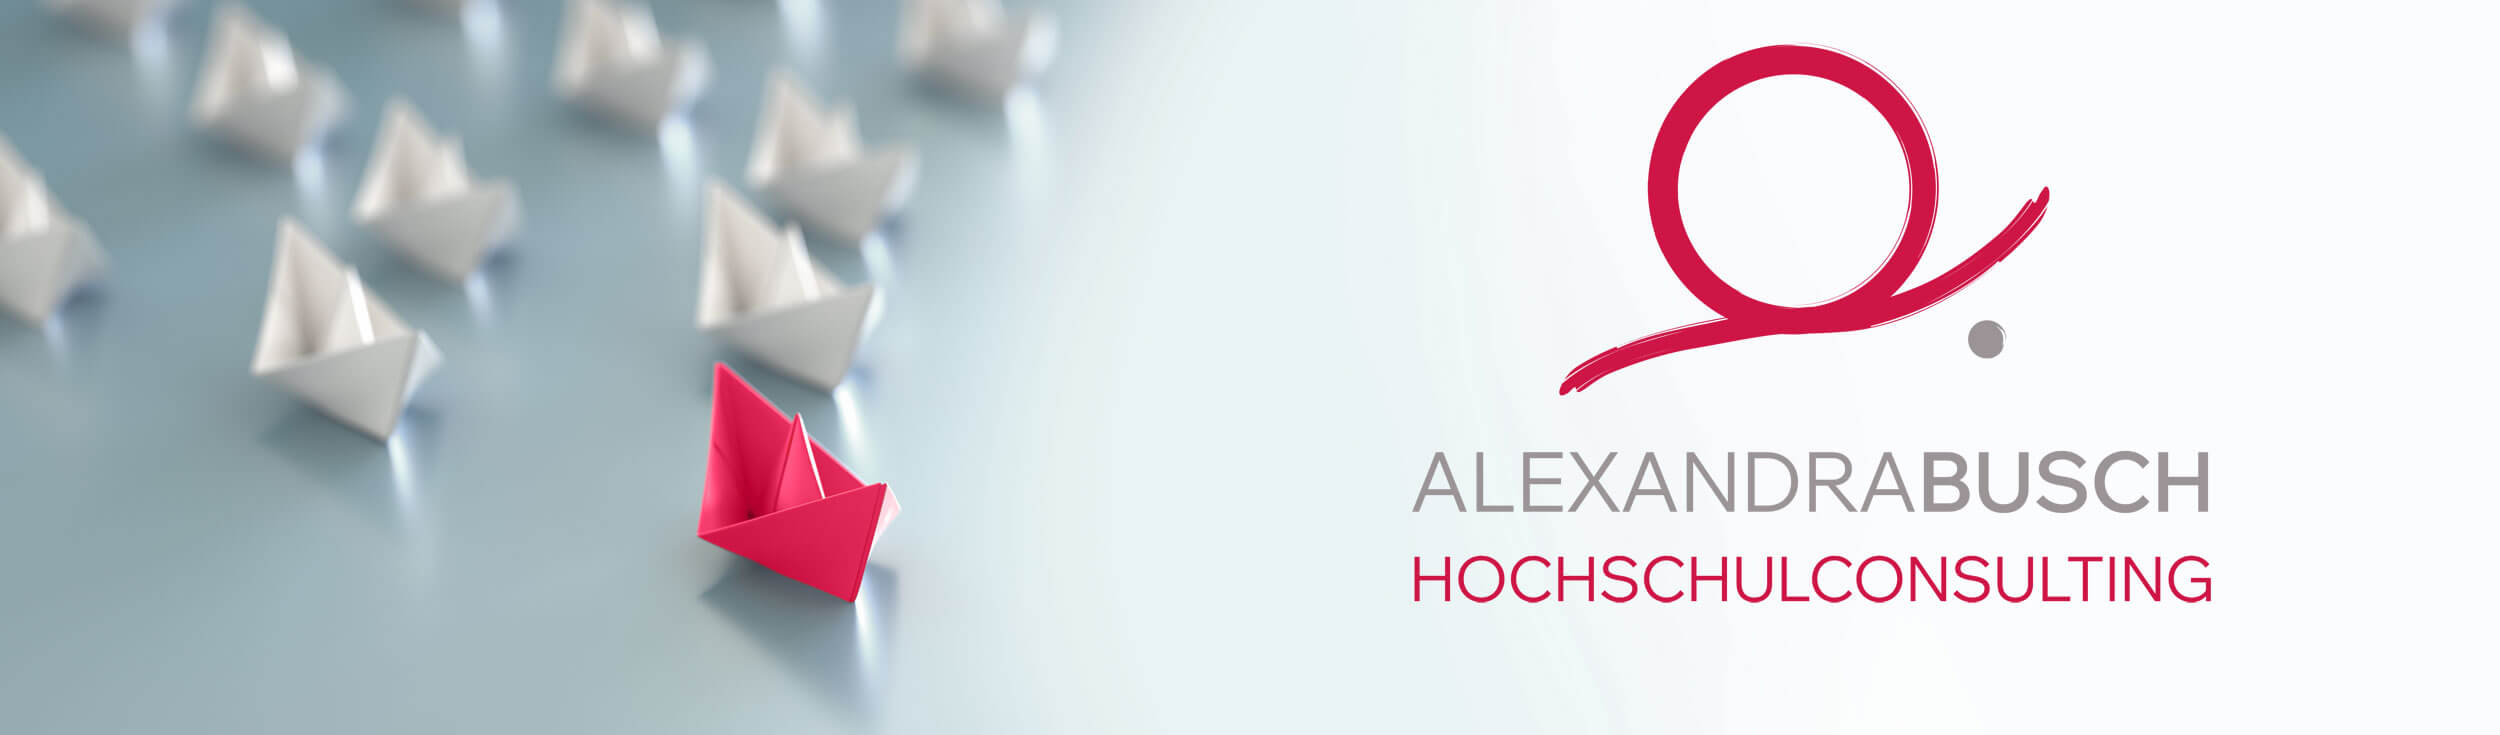 Alexandra Busch - Hochschulconsulting